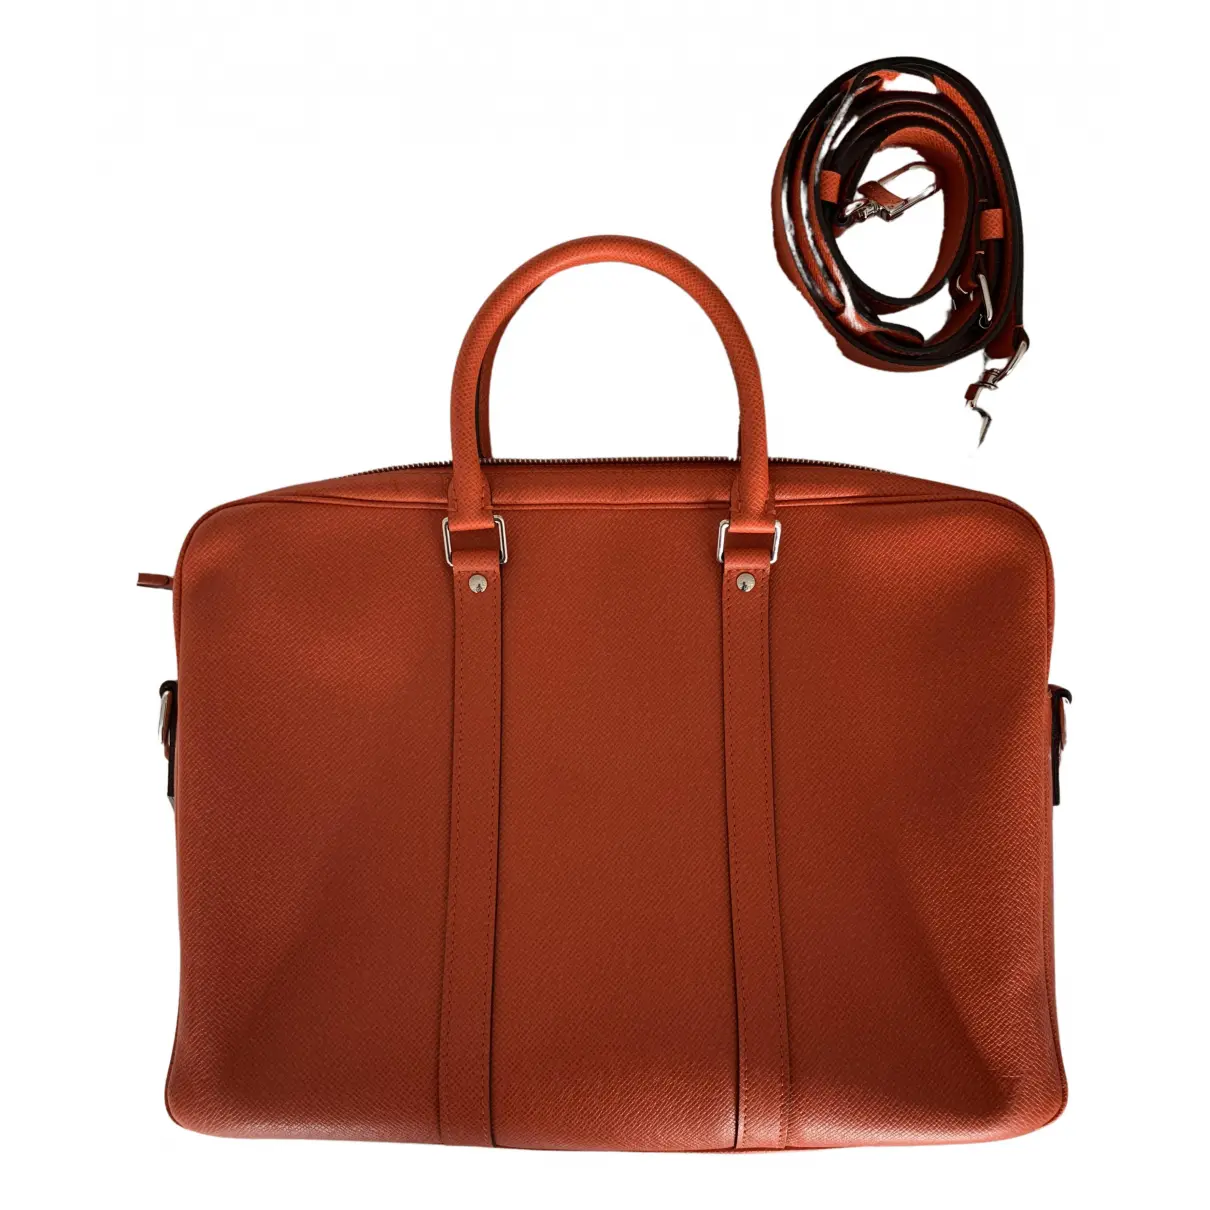 Porte Documents Voyage leather bag Louis Vuitton